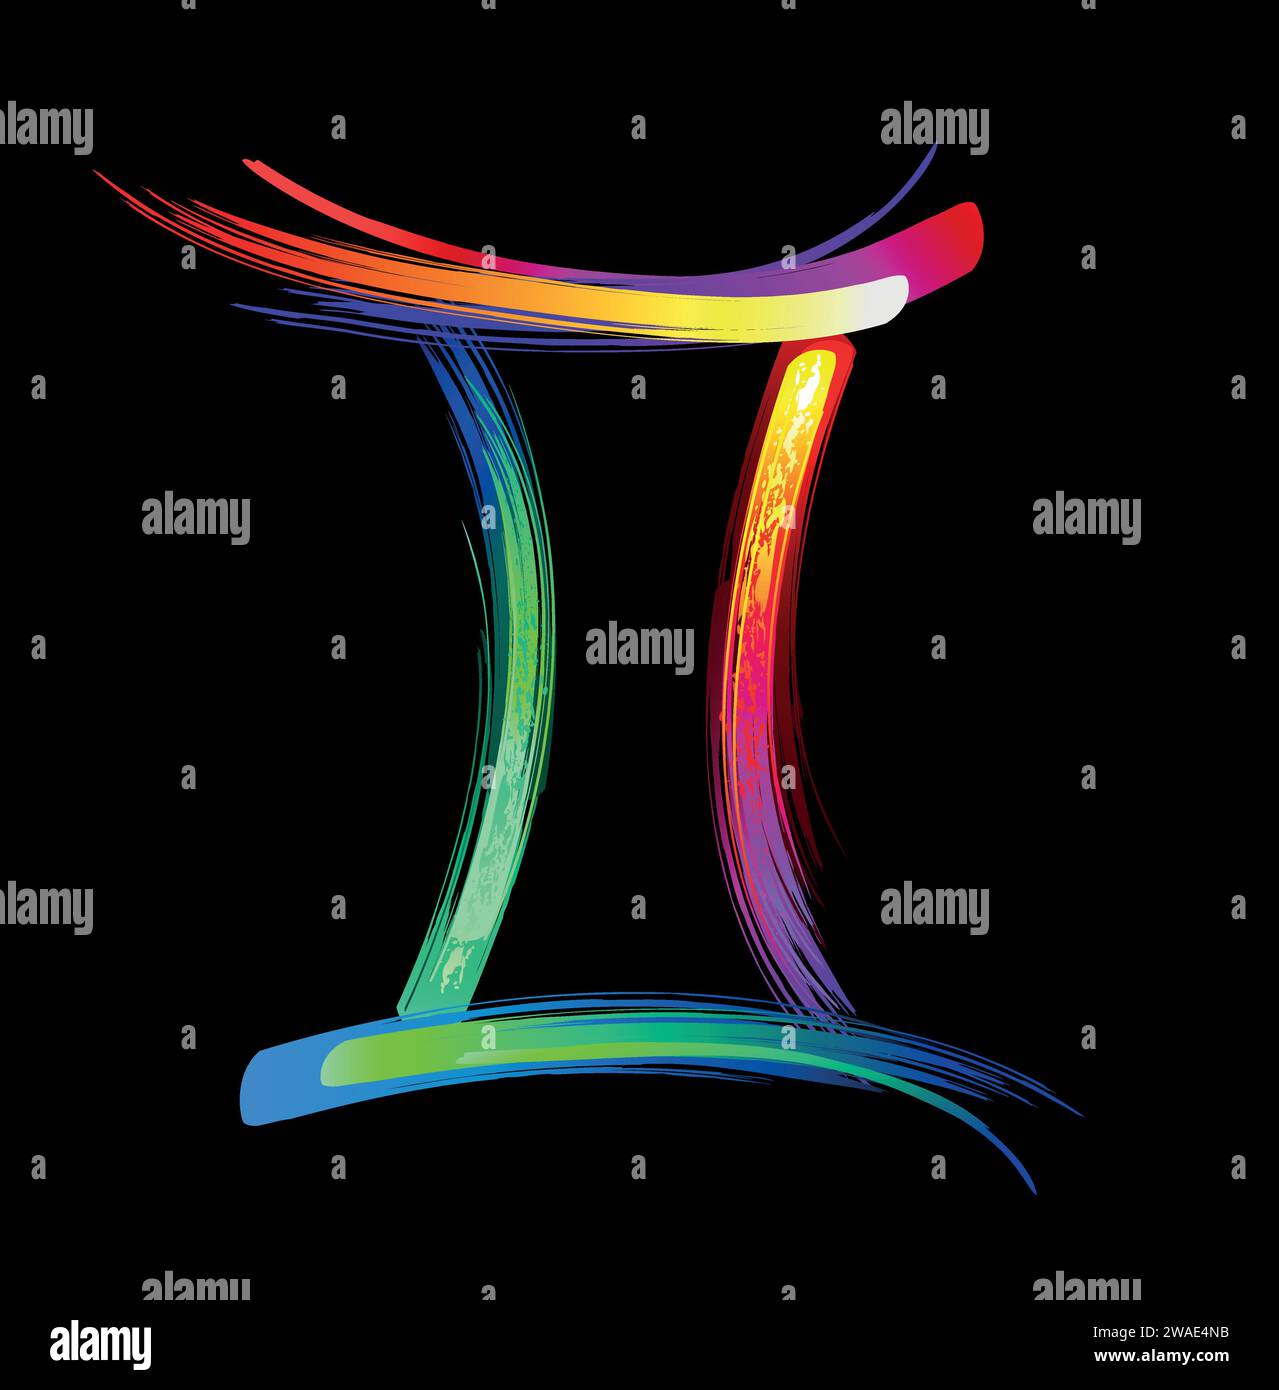 Signe du zodiaque Gemini, peint avec de grands coups d'arc-en-ciel, lumineux, multicolore, luminescent, peinture au néon sur fond noir. Symbole du zodiaque. Illustration de Vecteur